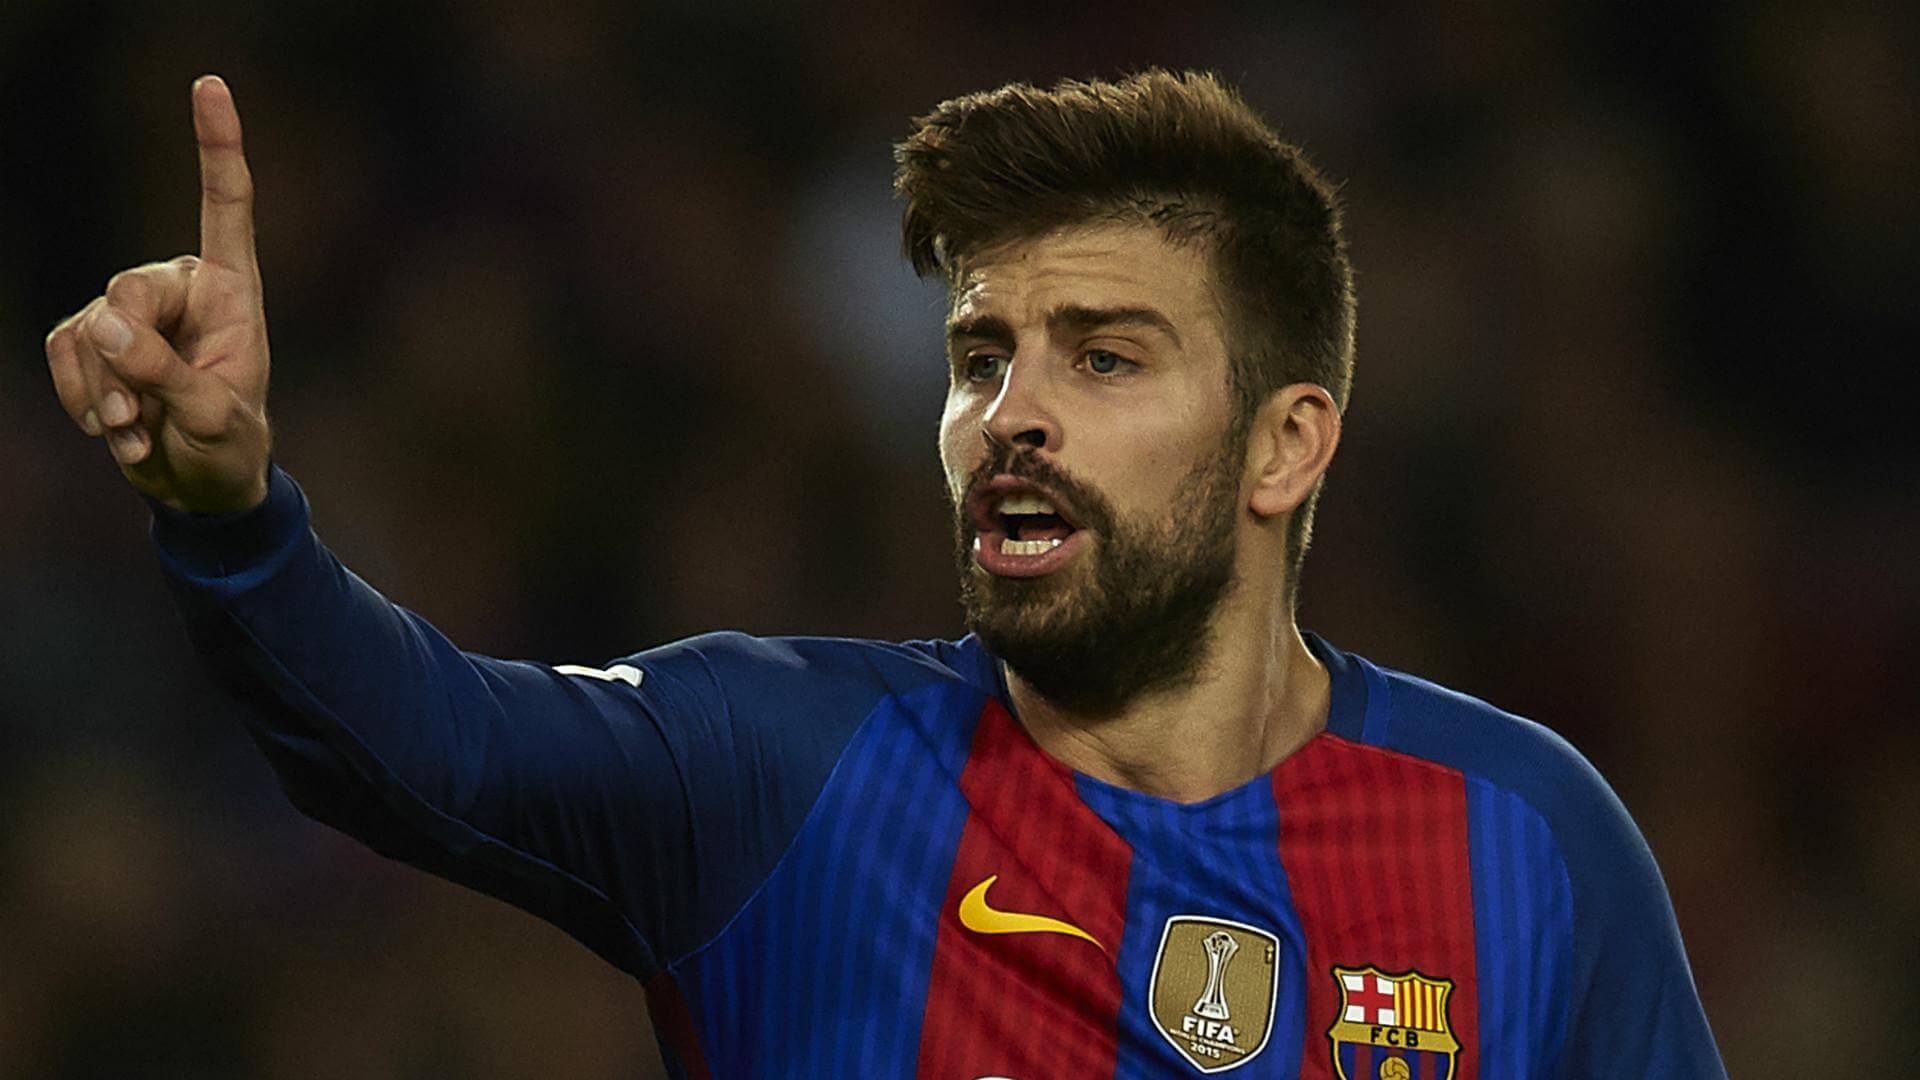 Barcelona star says goodbye to his career